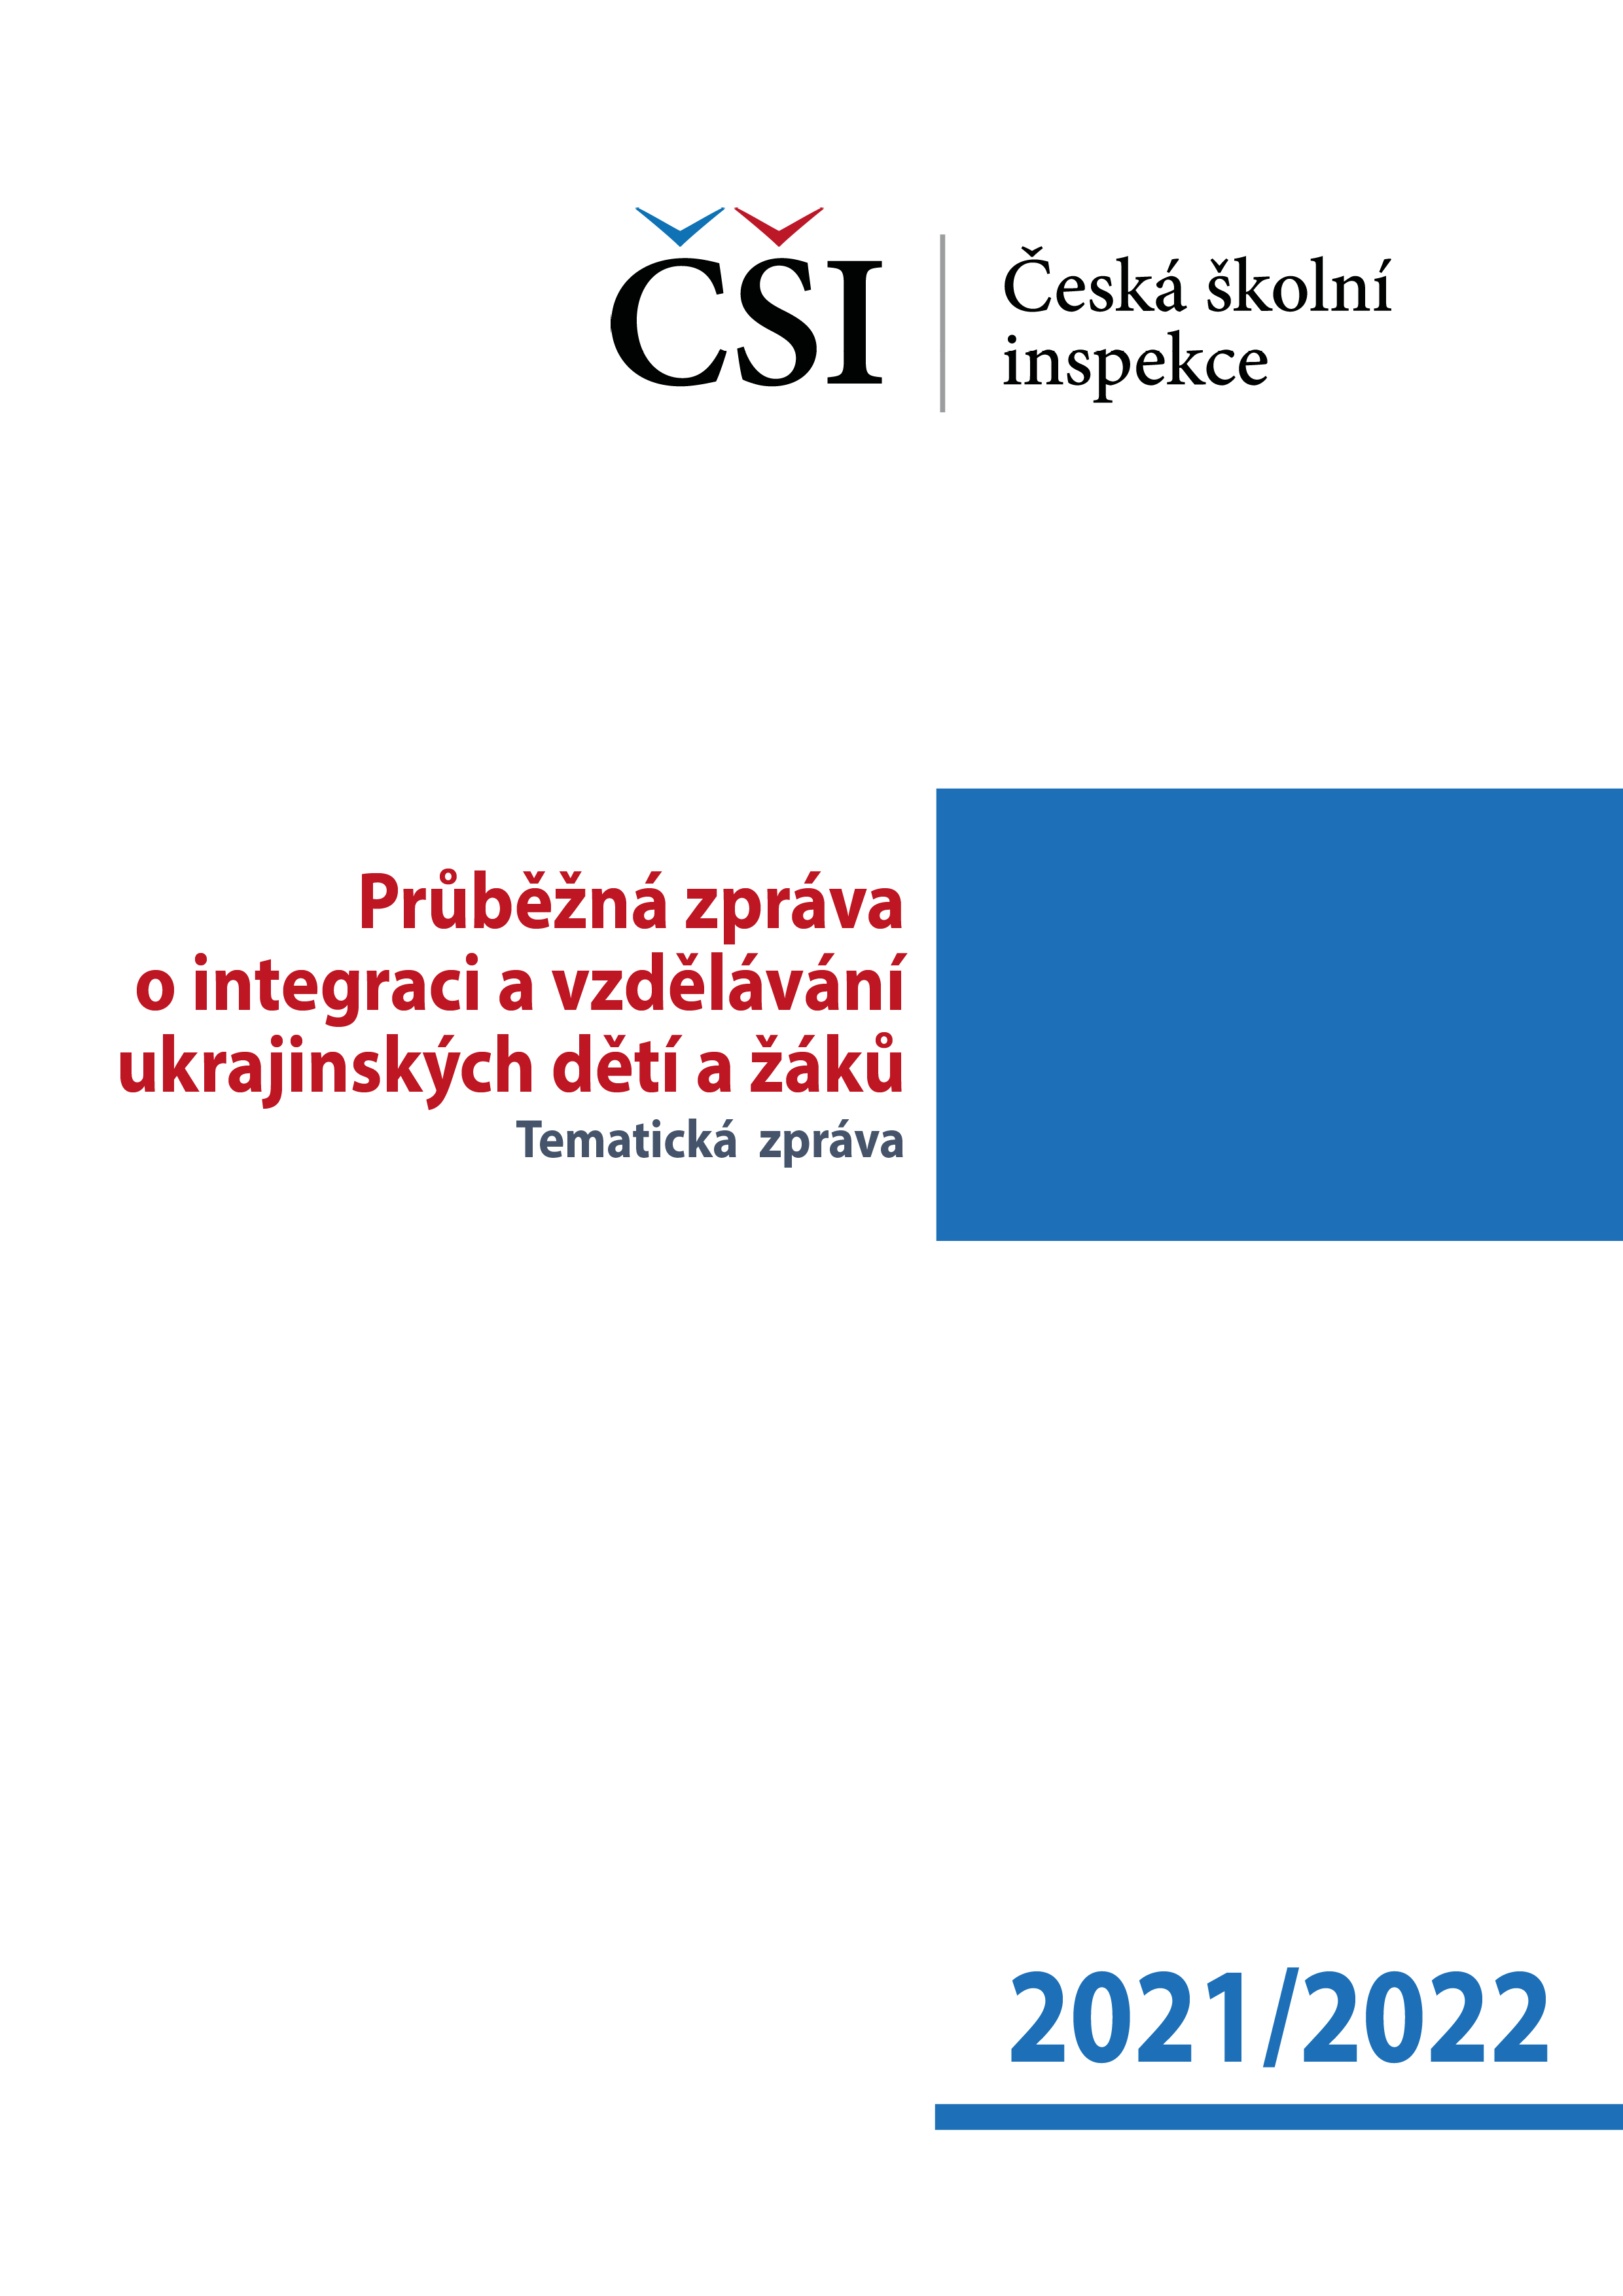 Tematická zpráva – Průběžná zpráva o integraci a vzdělávání ukrajinských dětí a žáků